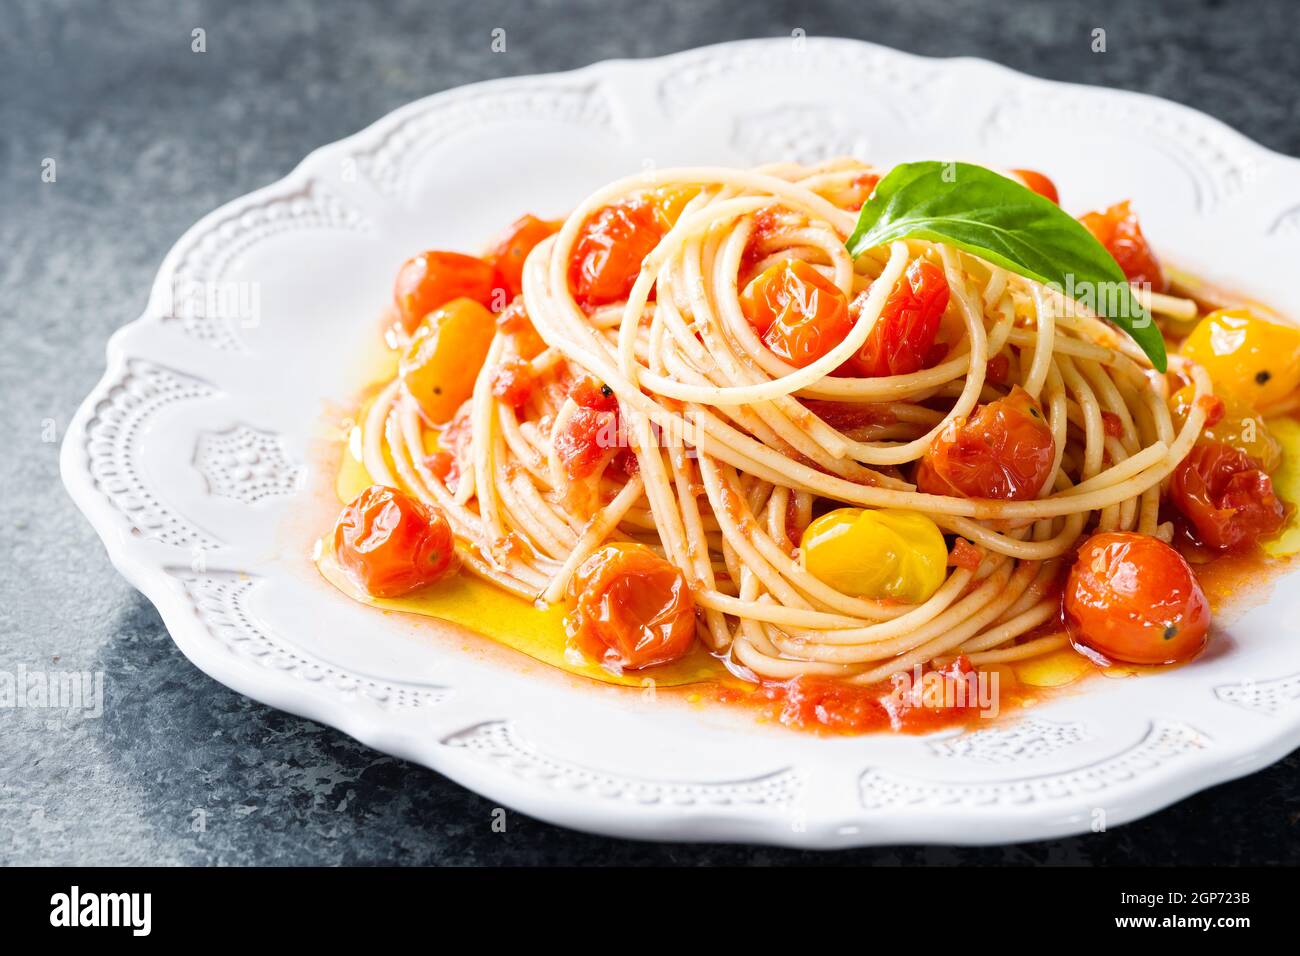 primo piano del piatto di pasta rustica di spaghetti al pomodoro alla ciliegia italiana Foto Stock